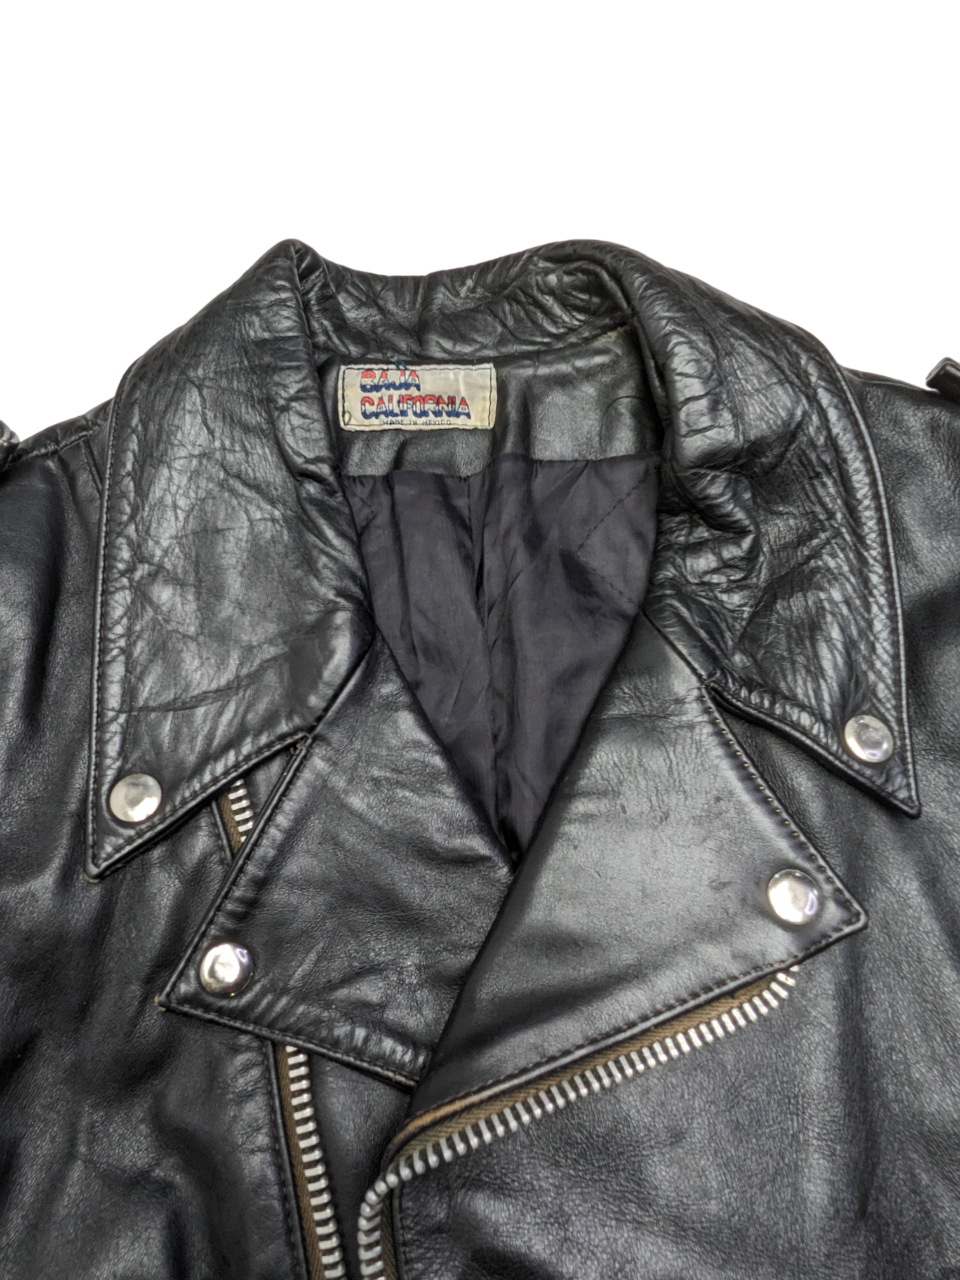 Vintage Black Leather Jacket 1 pc 6 lbs C0419202-05